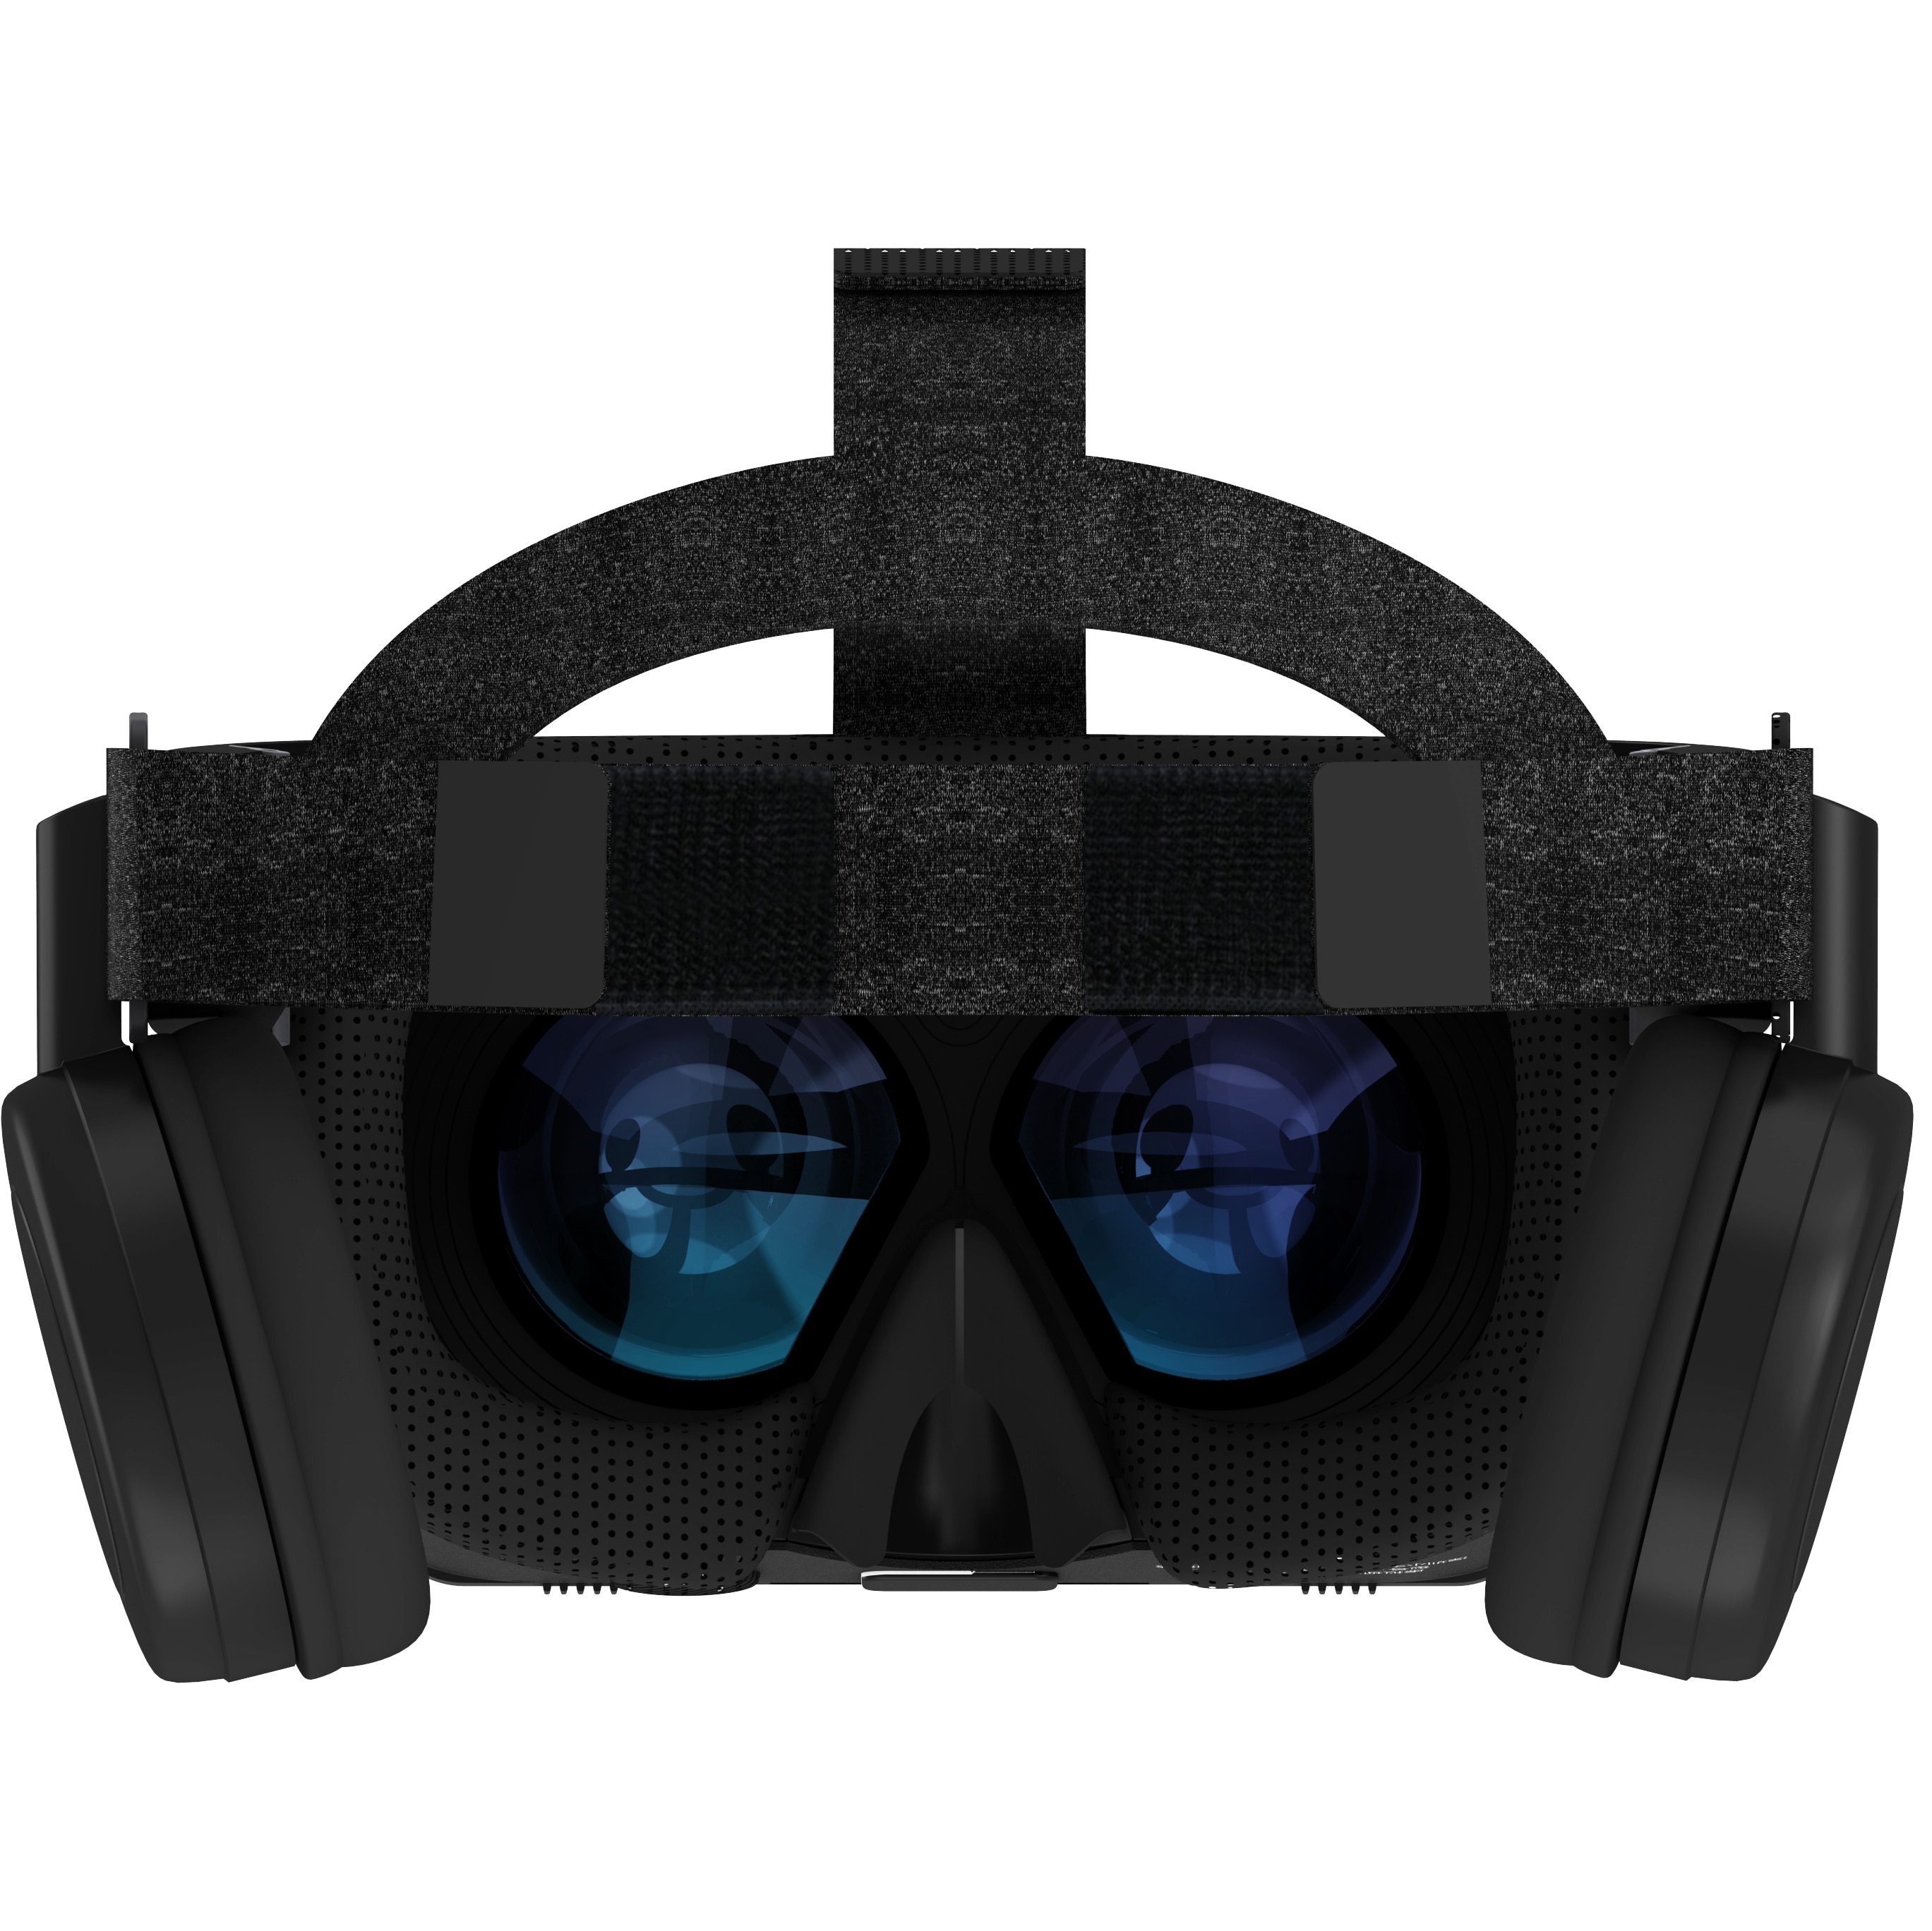 VR gläser Drahtlose Bluetooth VR Headset Virtuelle Realität Spiel liebhaber VR shinecon Brille helme Kasten Für Android IOS Telefon